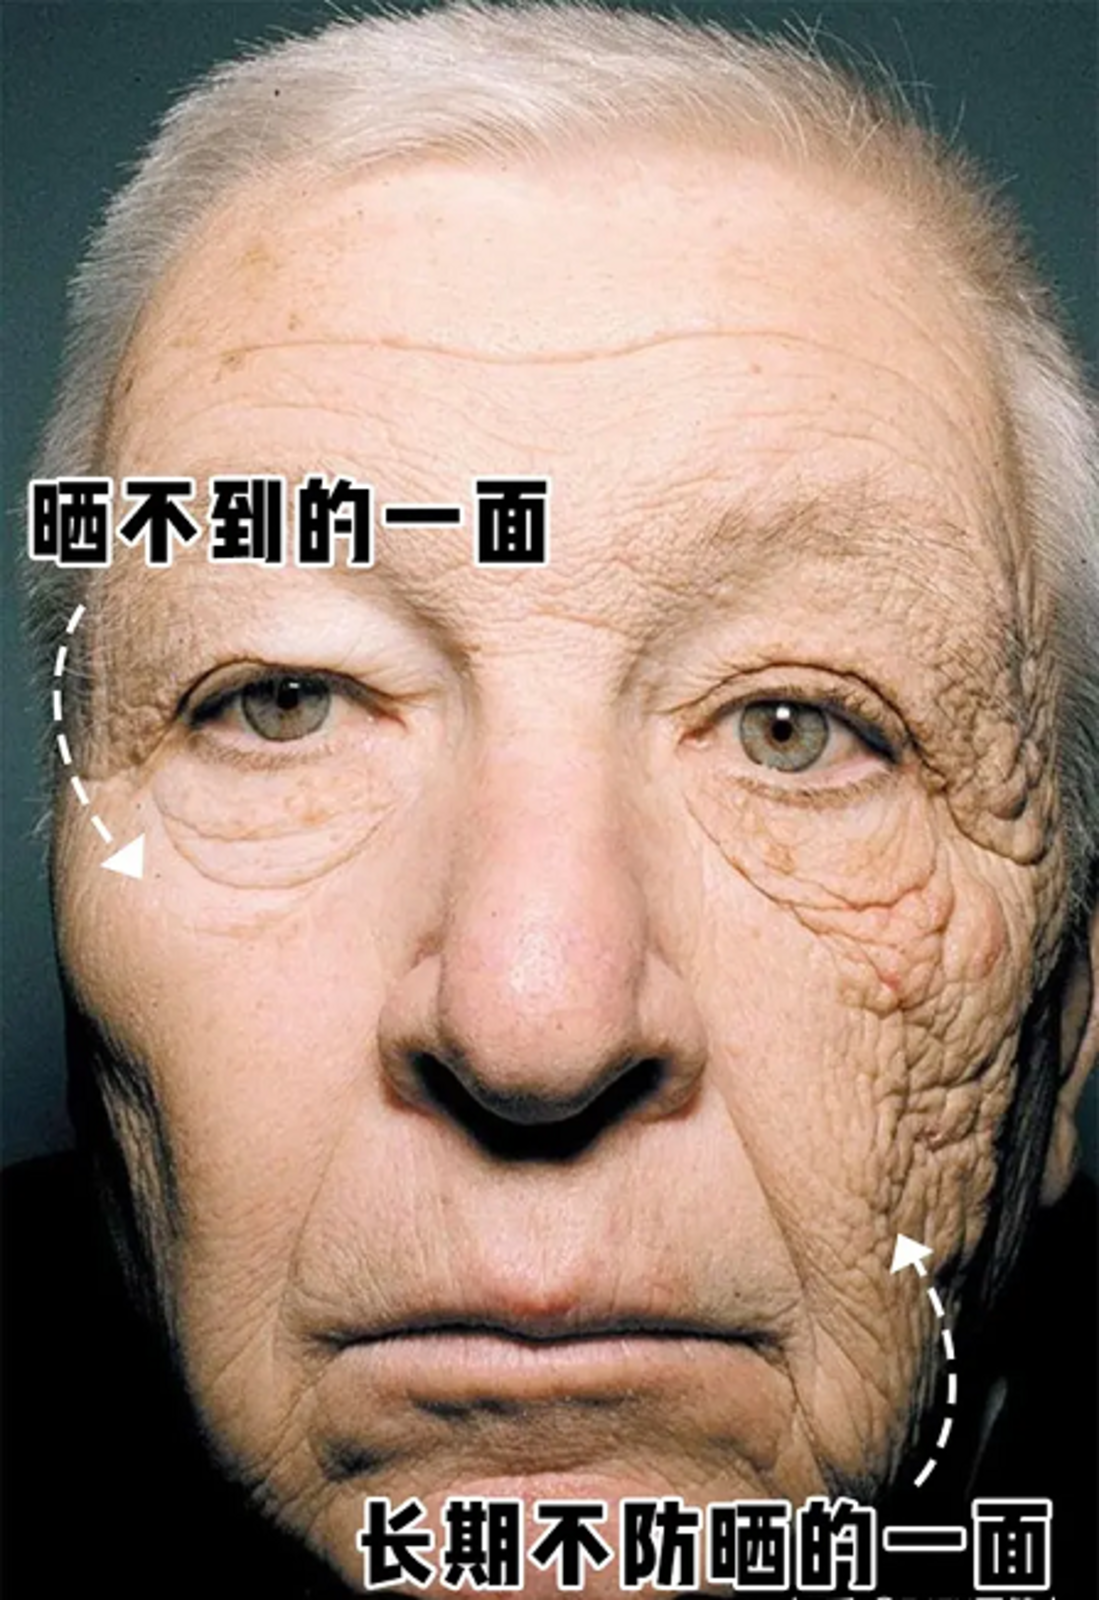 光老化对皮肤的影响图片